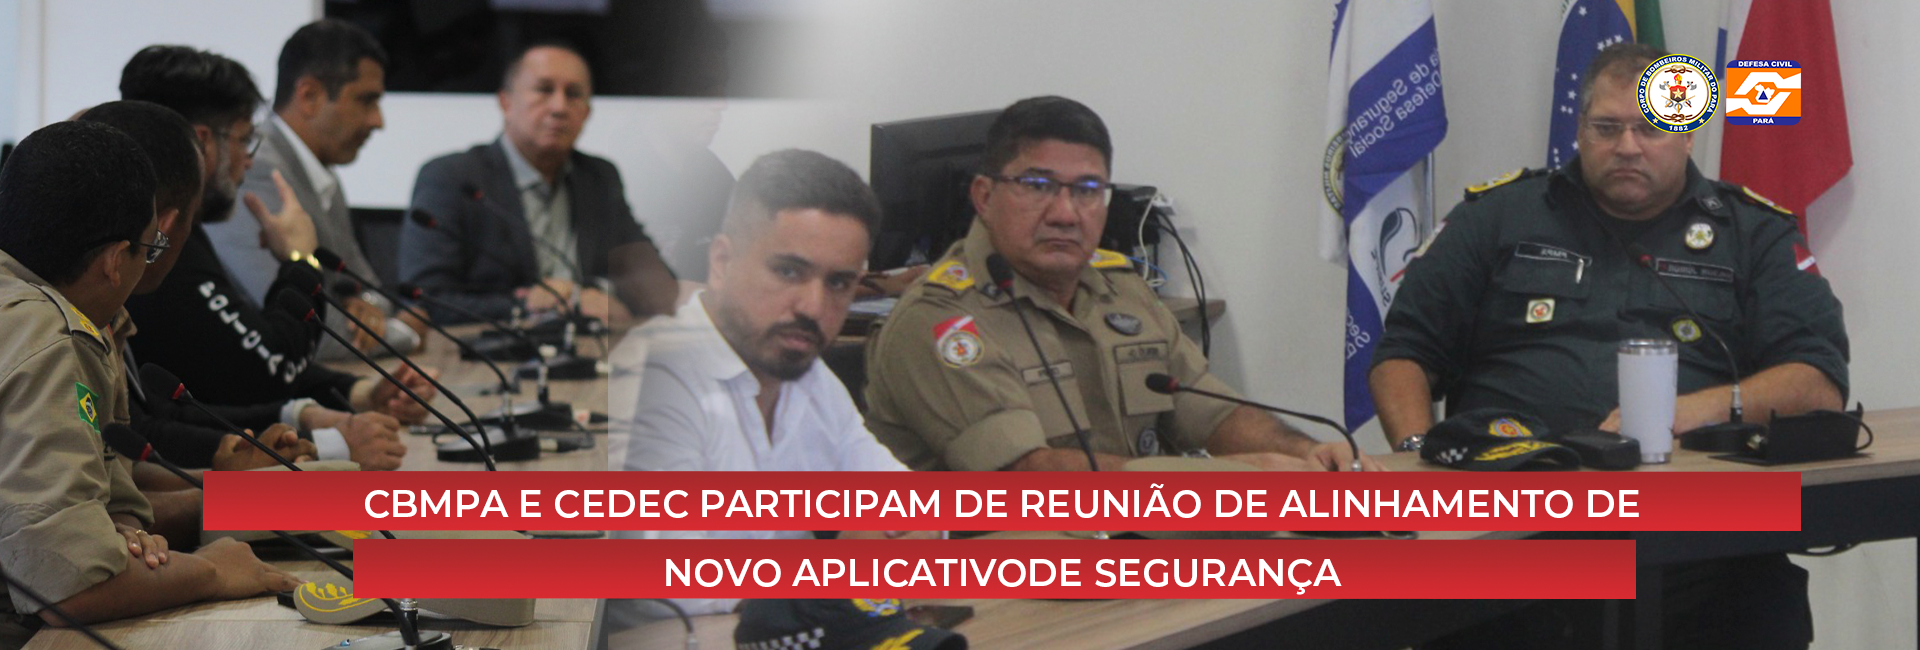 CBMPA E CEDEC PARTICIPAM DE REUNIÃO DE ALINHAMENTO DE NOVO APLICATIVO DE SEGURANÇA